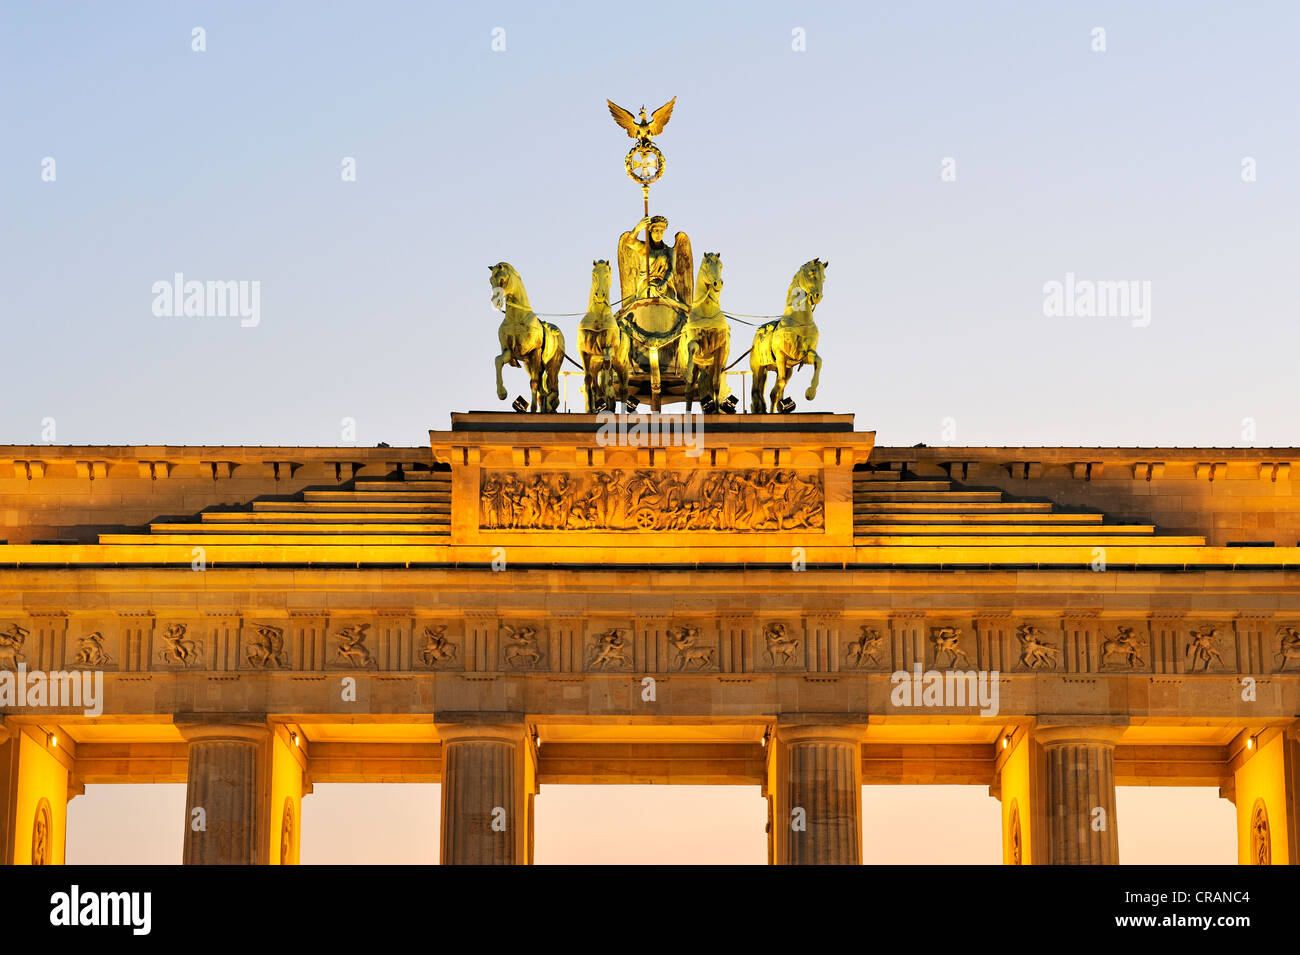 Le quadrige de la porte de Brandebourg à Berlin, Germany, Europe Banque D'Images